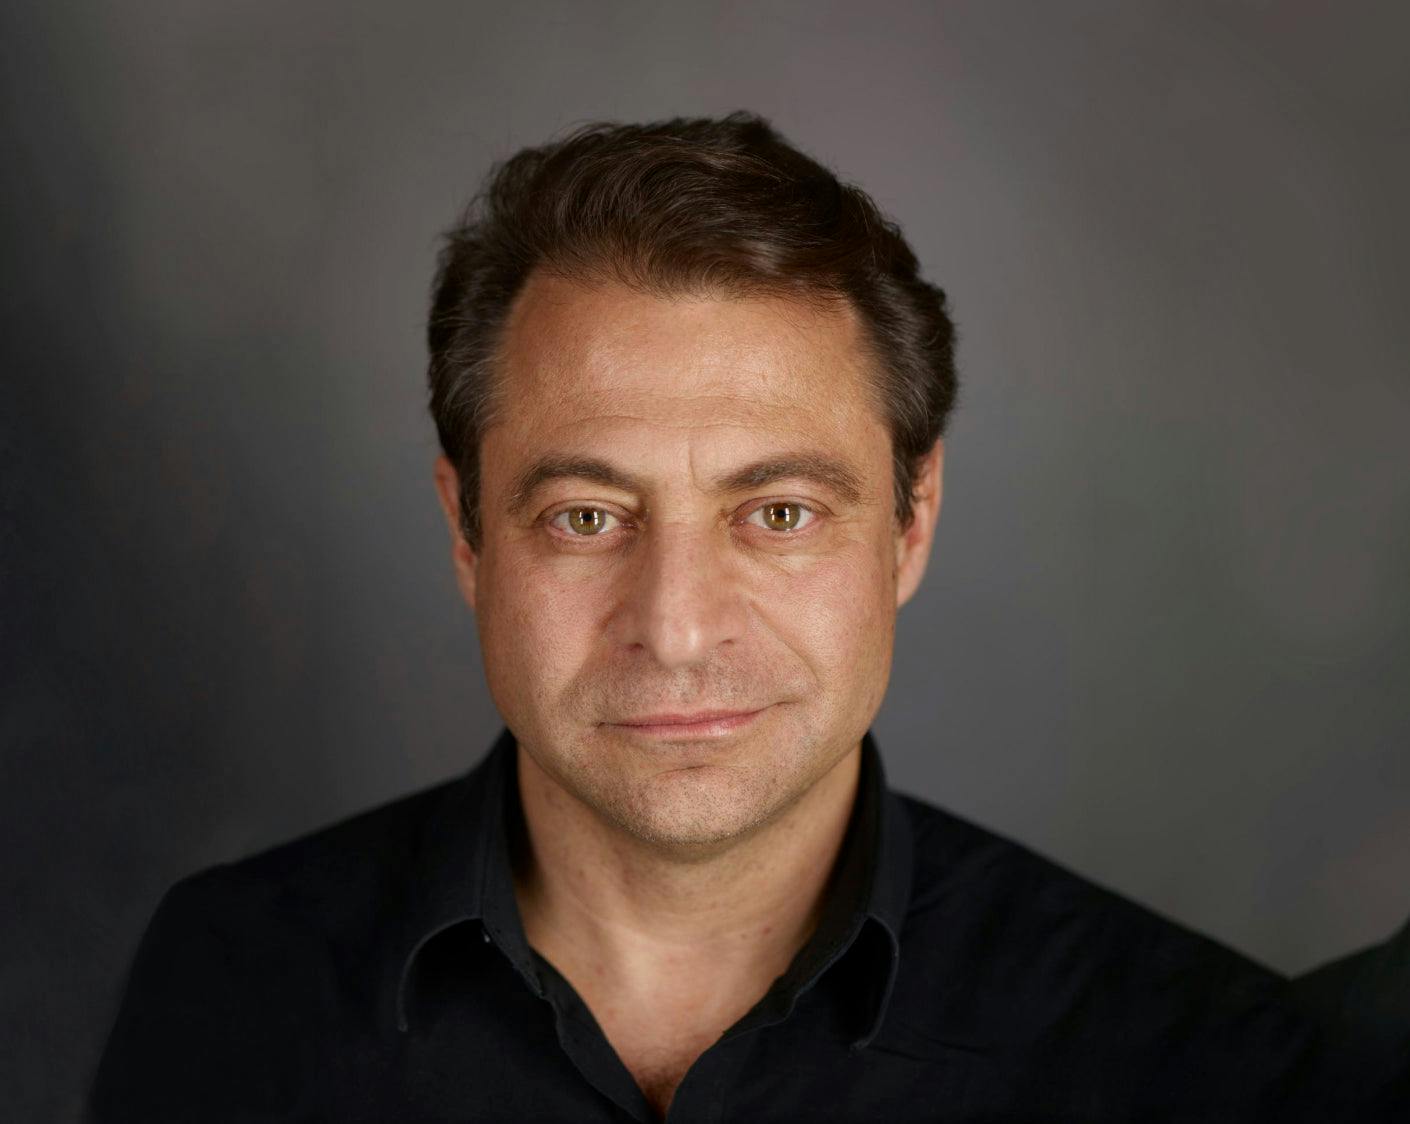 Portrait of Peter Diamandis